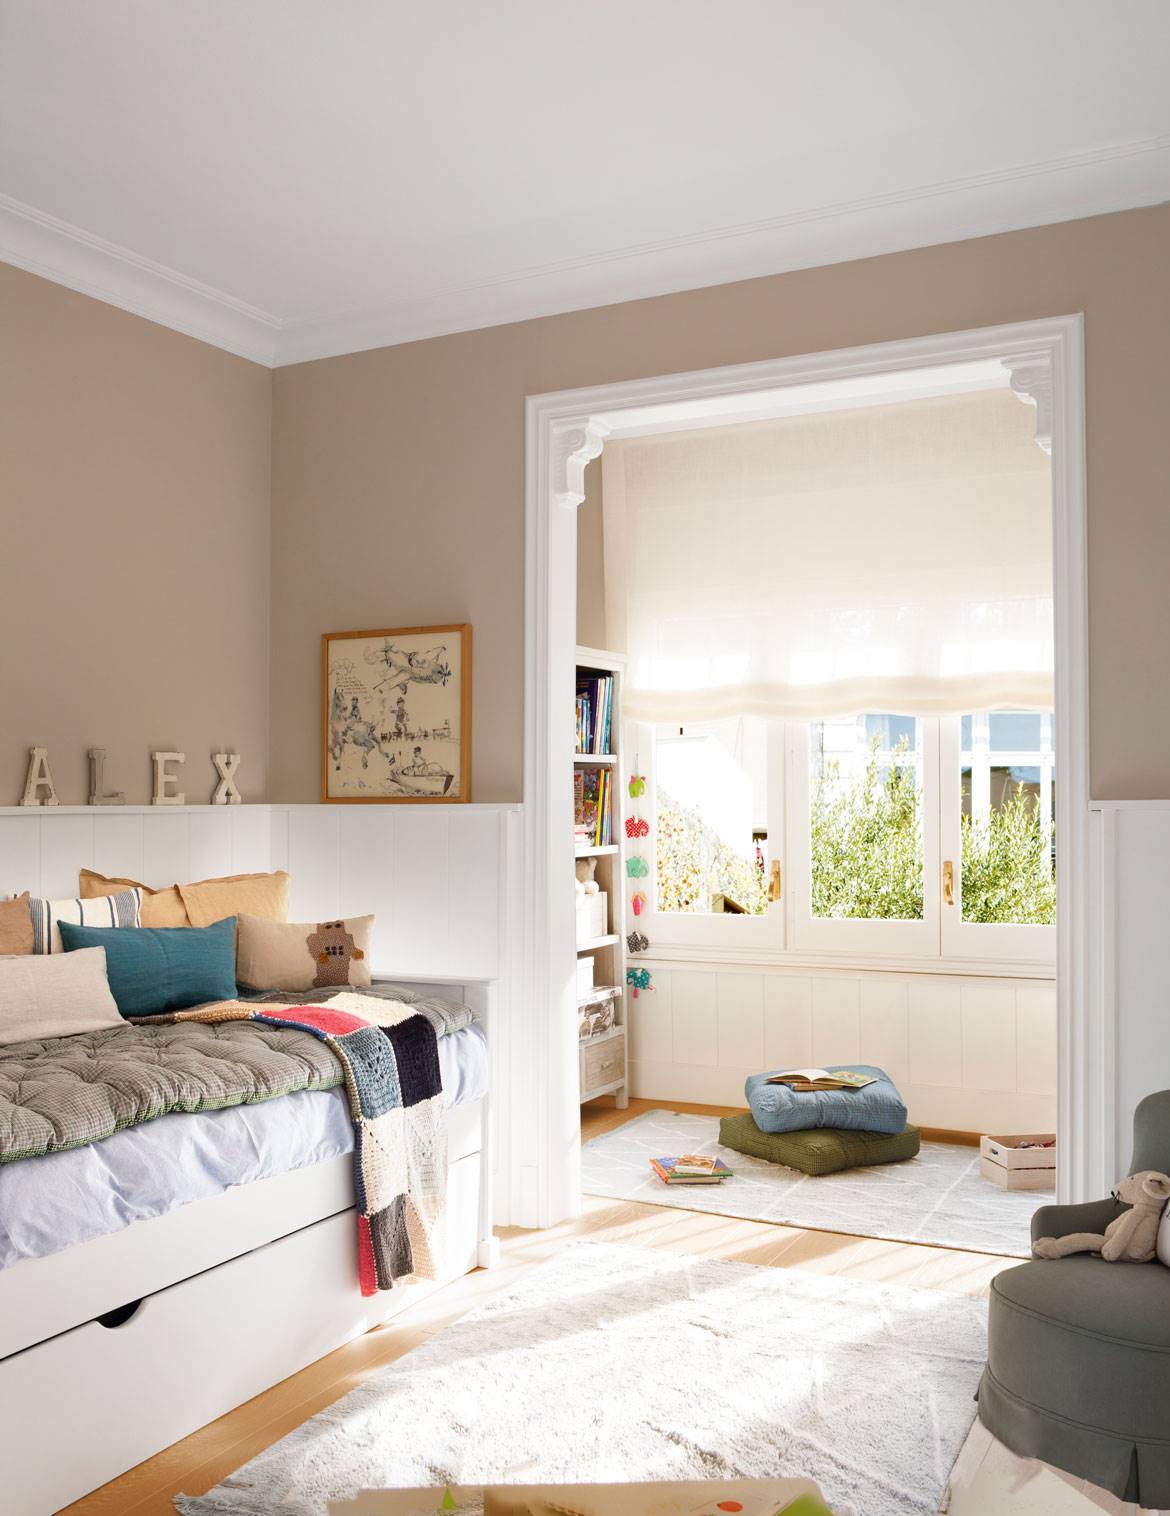 Habitación infantil con paredes pintadas color beige, alfombras, arrimadero y cama nido.